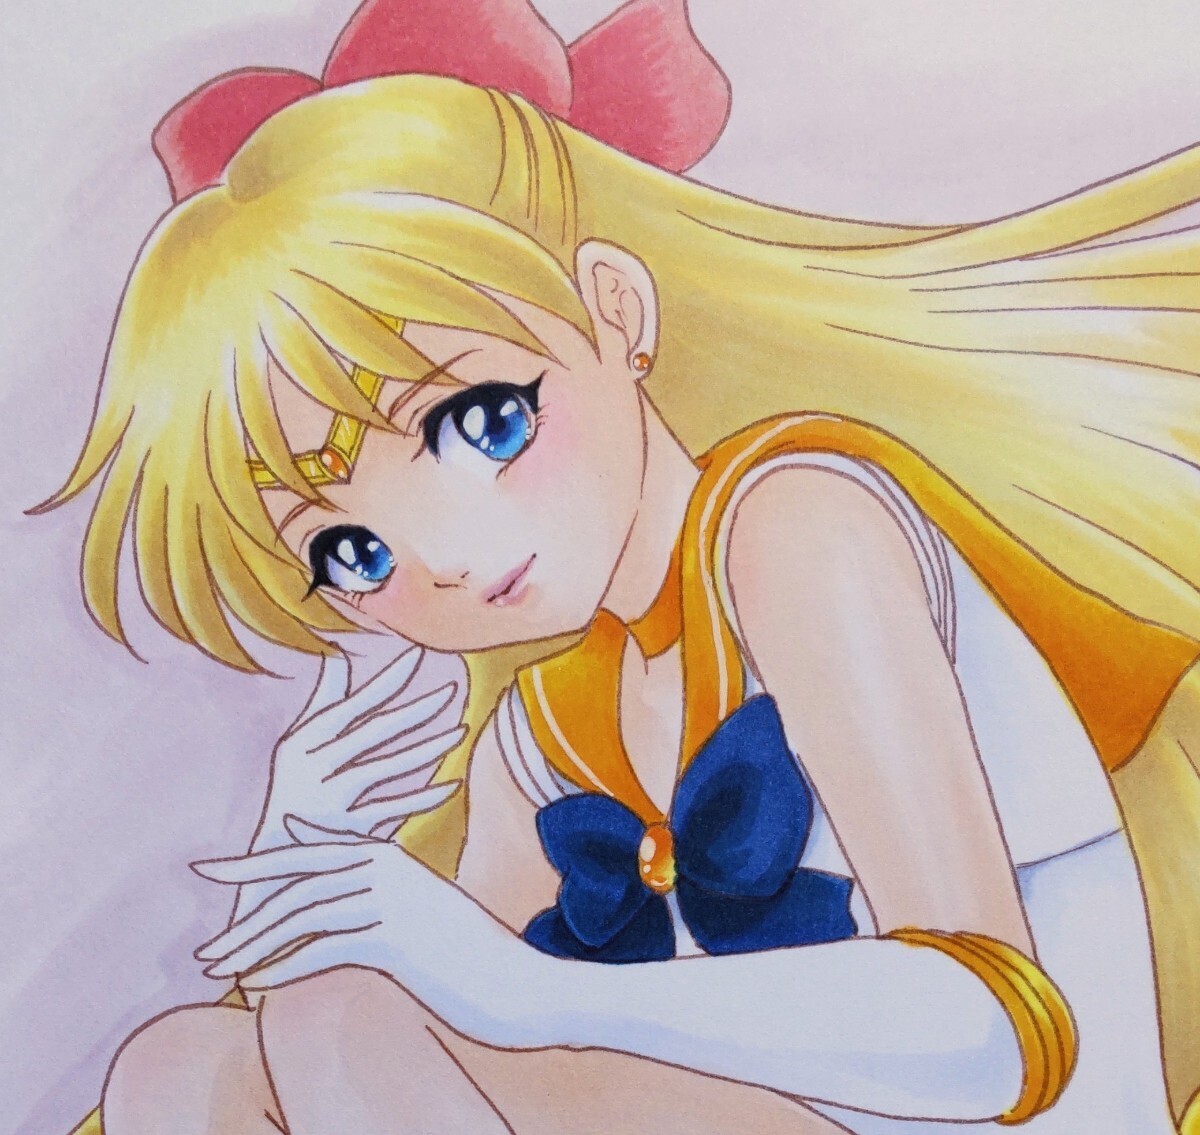 Handgezeichnete Illustration ☆ Pretty Guardian Sailor Moon ☆ Sailor Venus ☆ Minako Aino ☆ B5-Größe, Comics, Anime-Waren, handgezeichnete Illustration